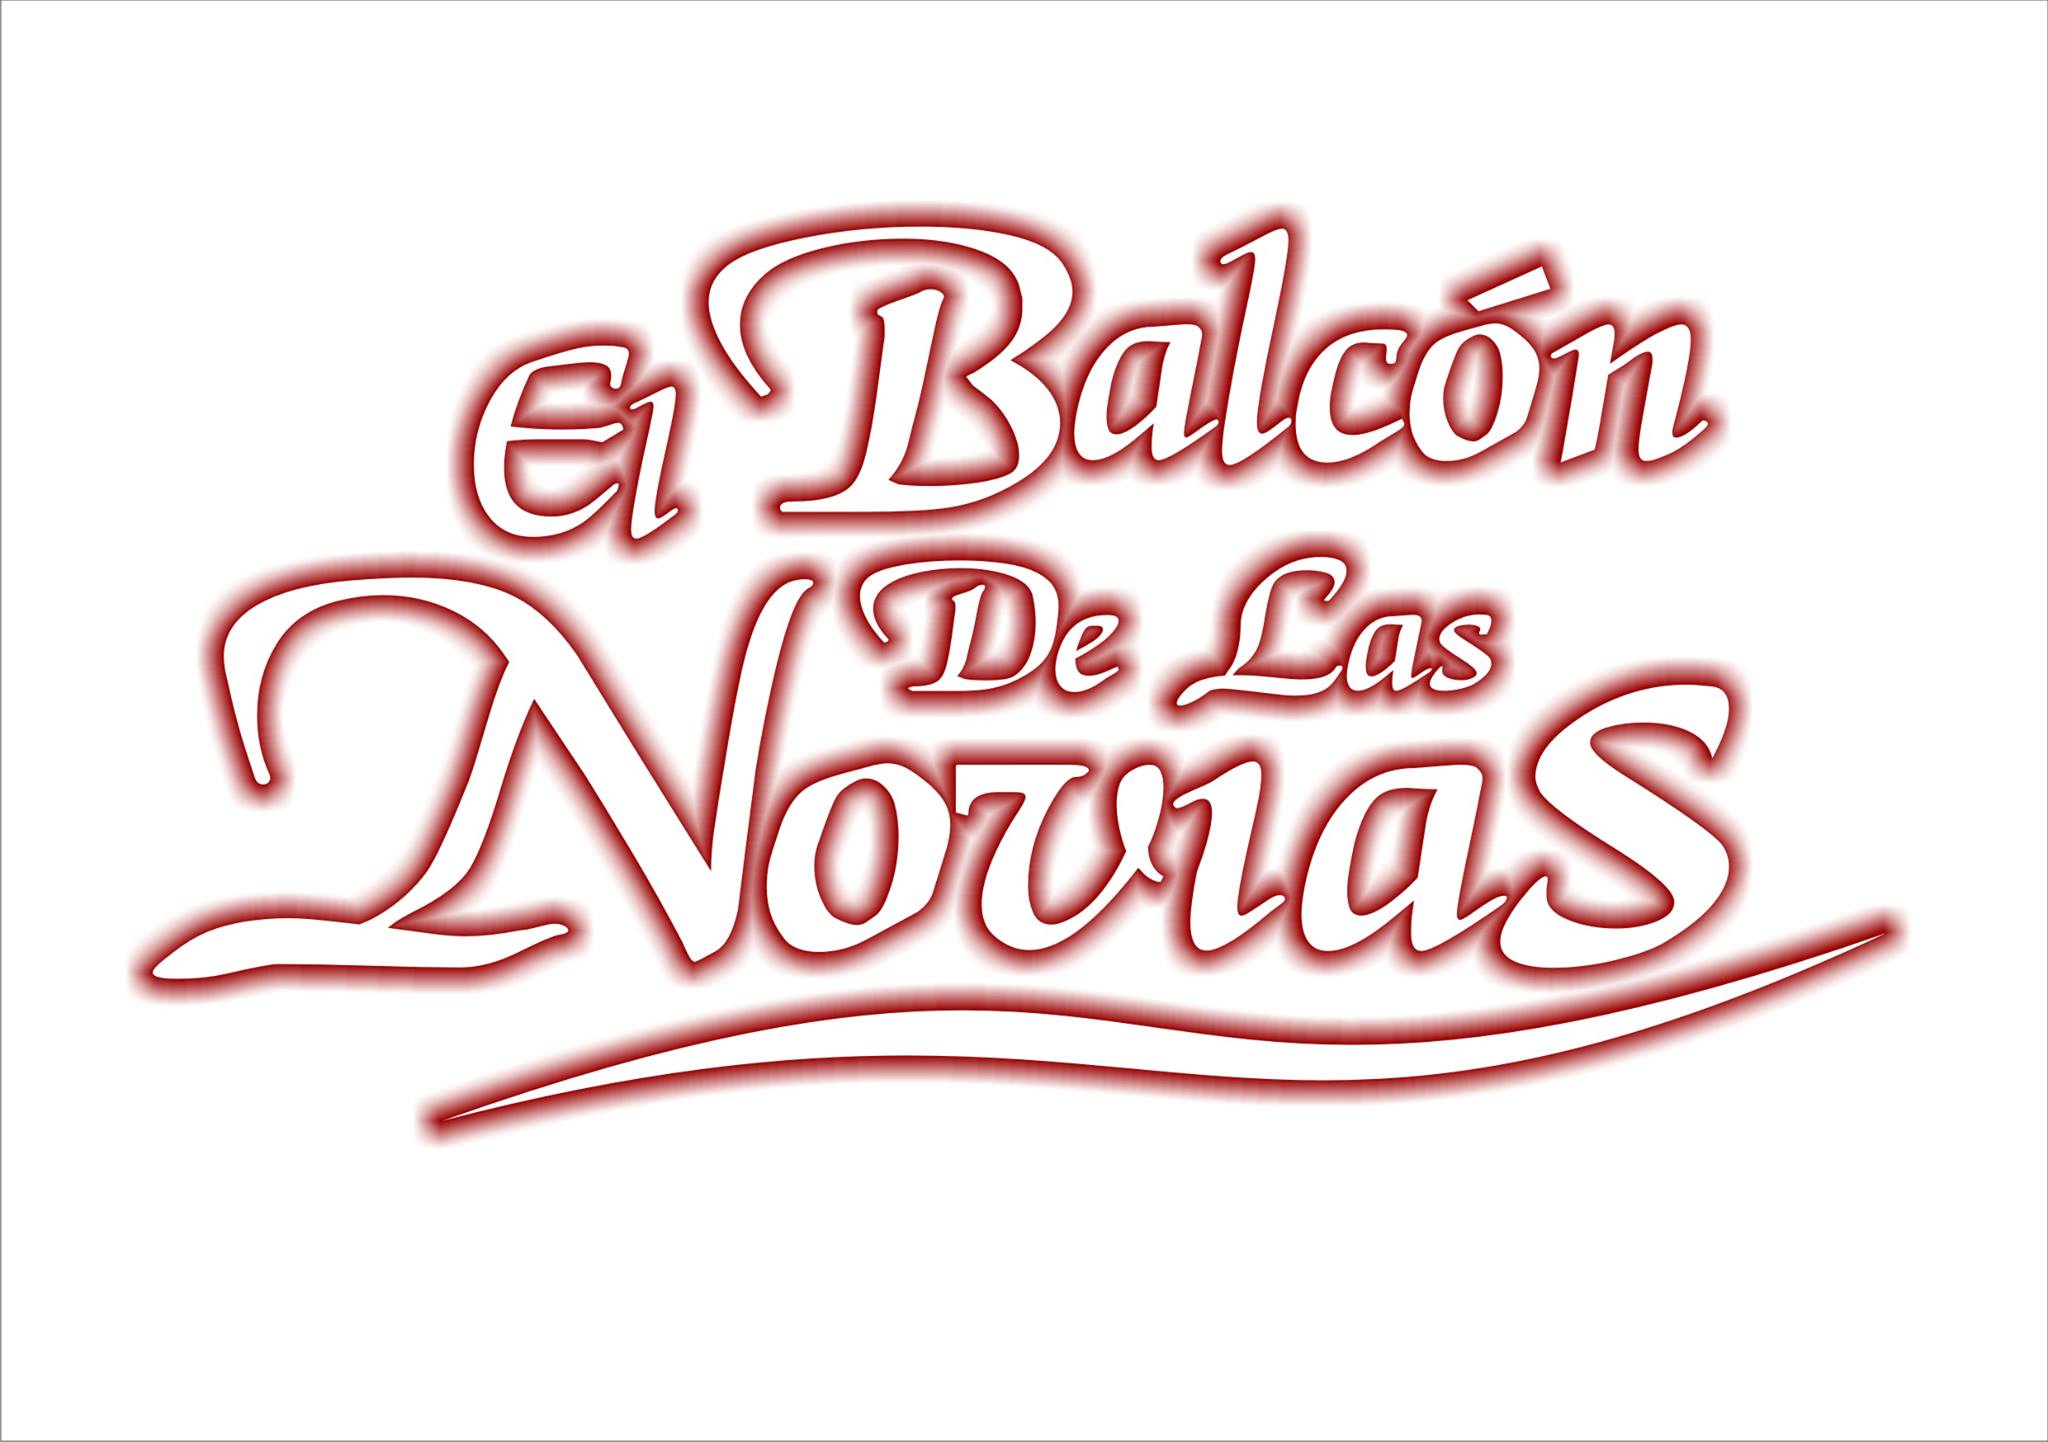   El Balcon De Las Novias